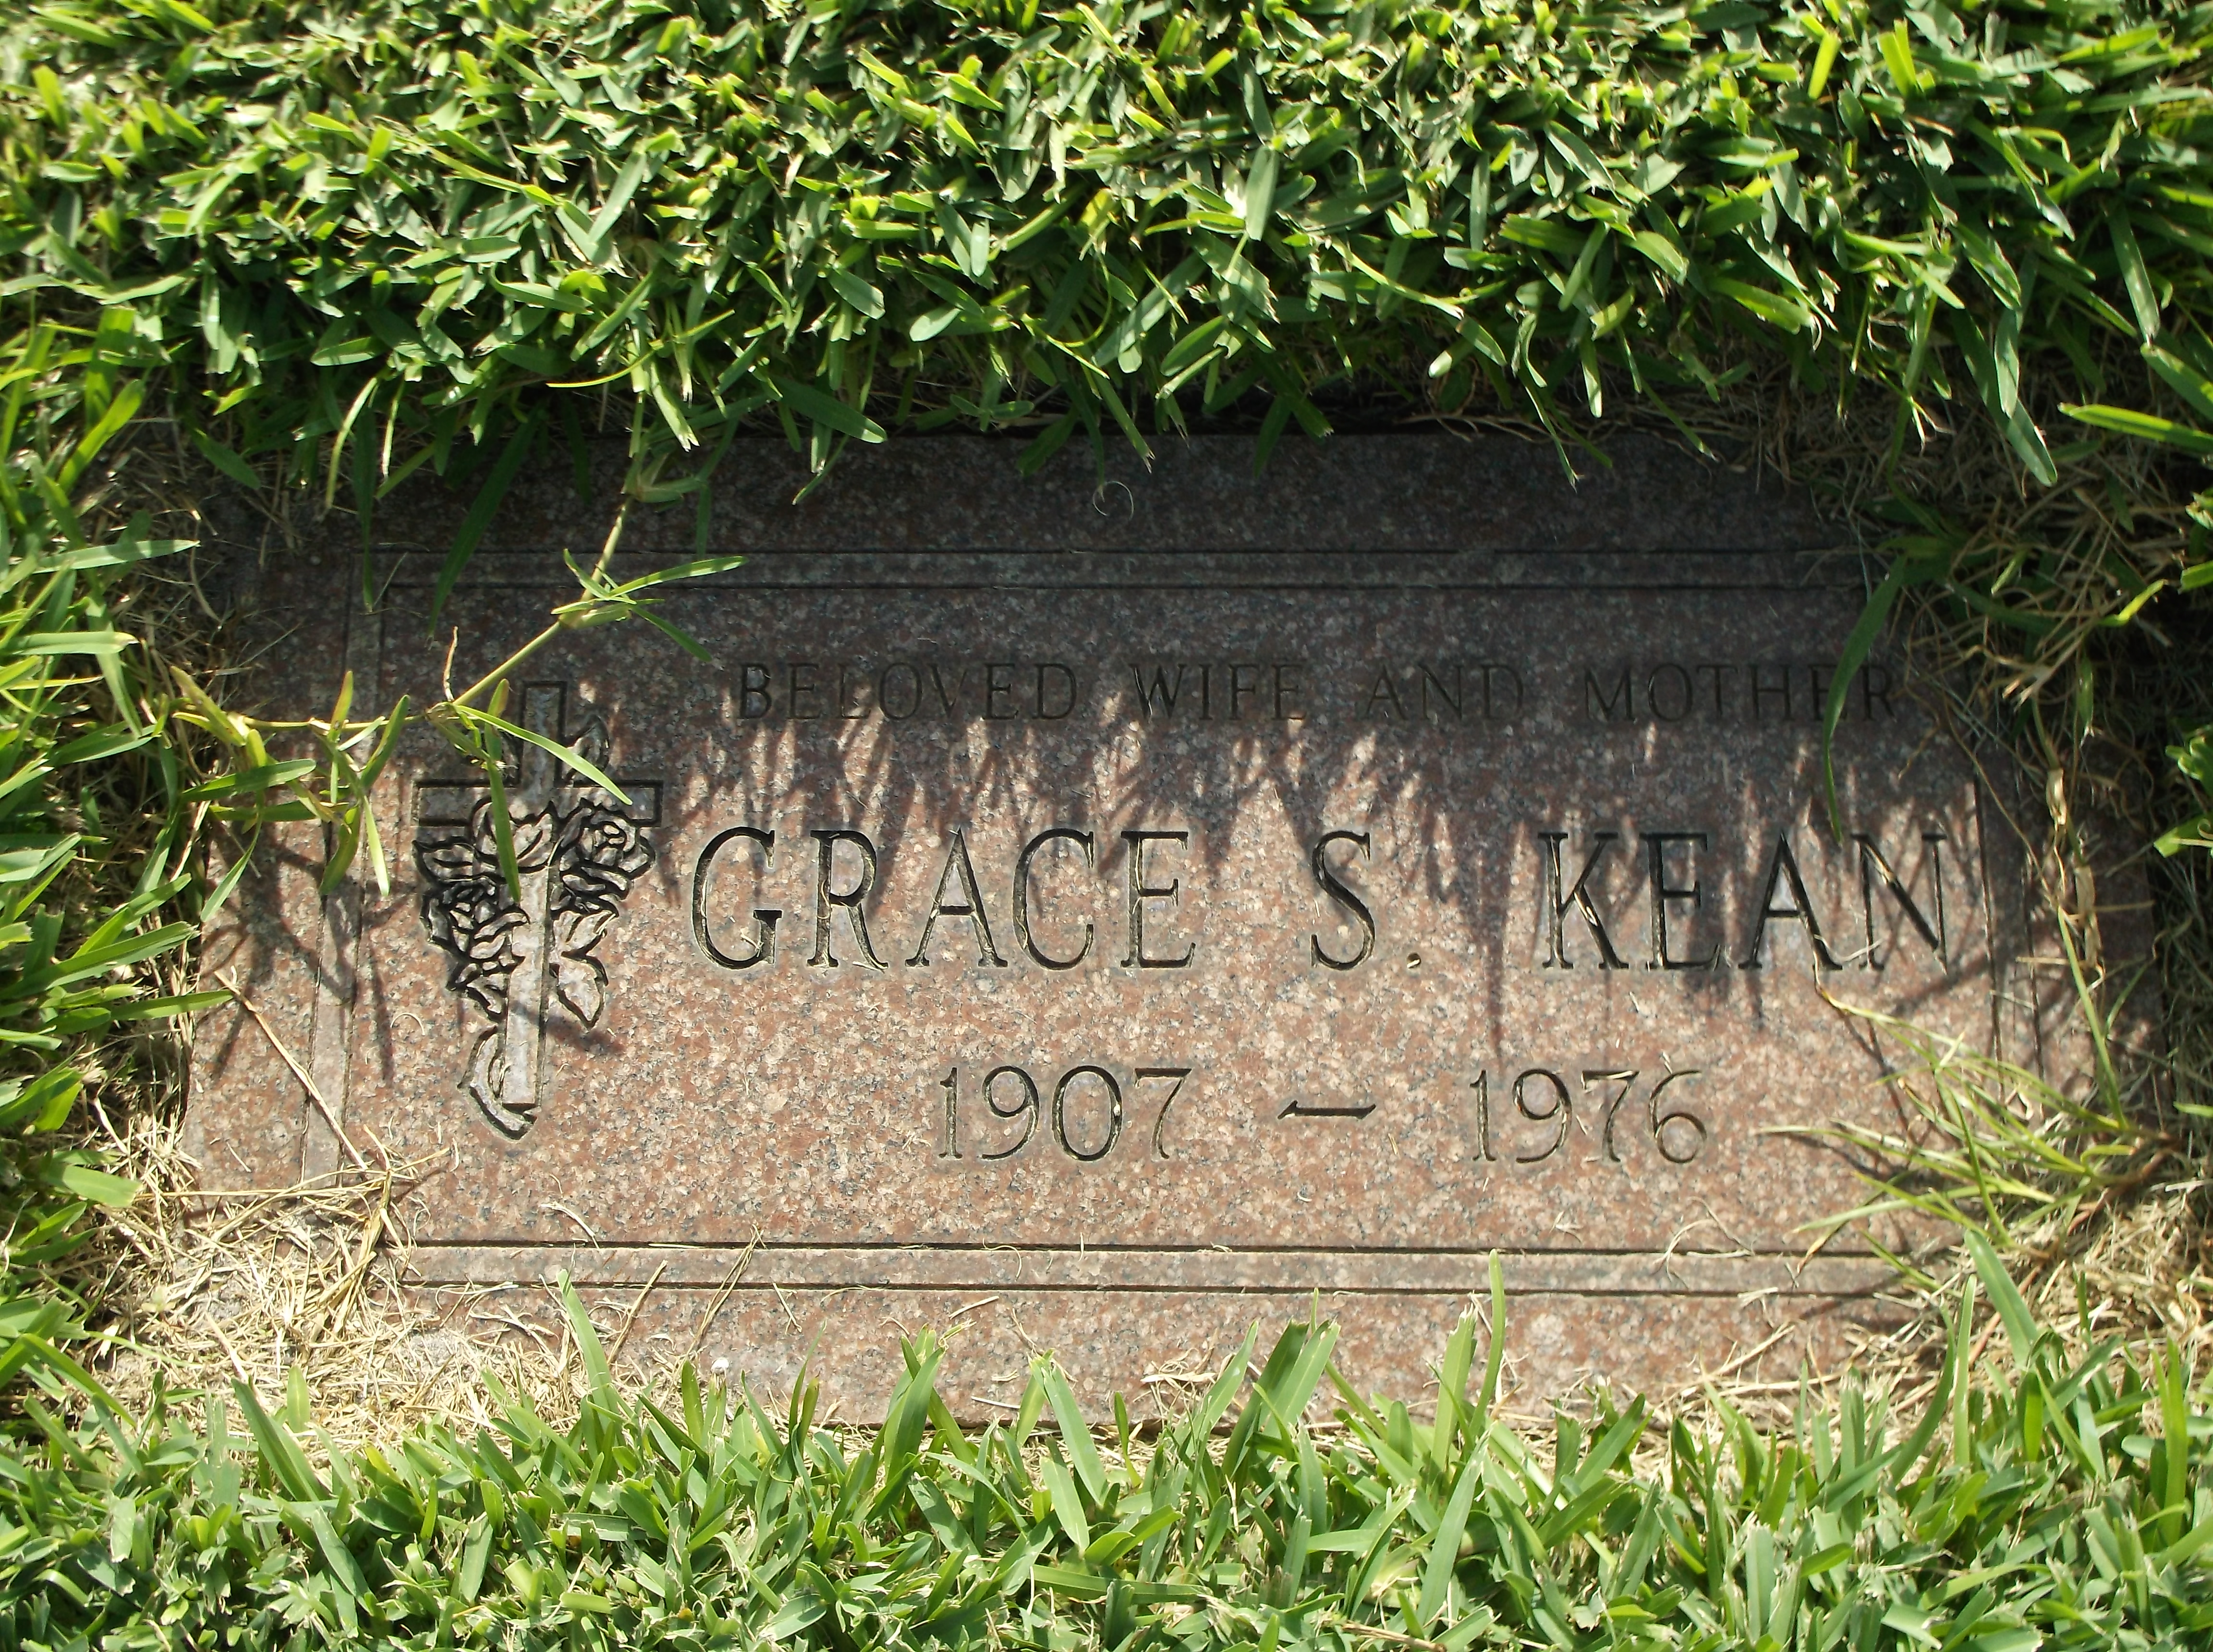 Grace S Kean